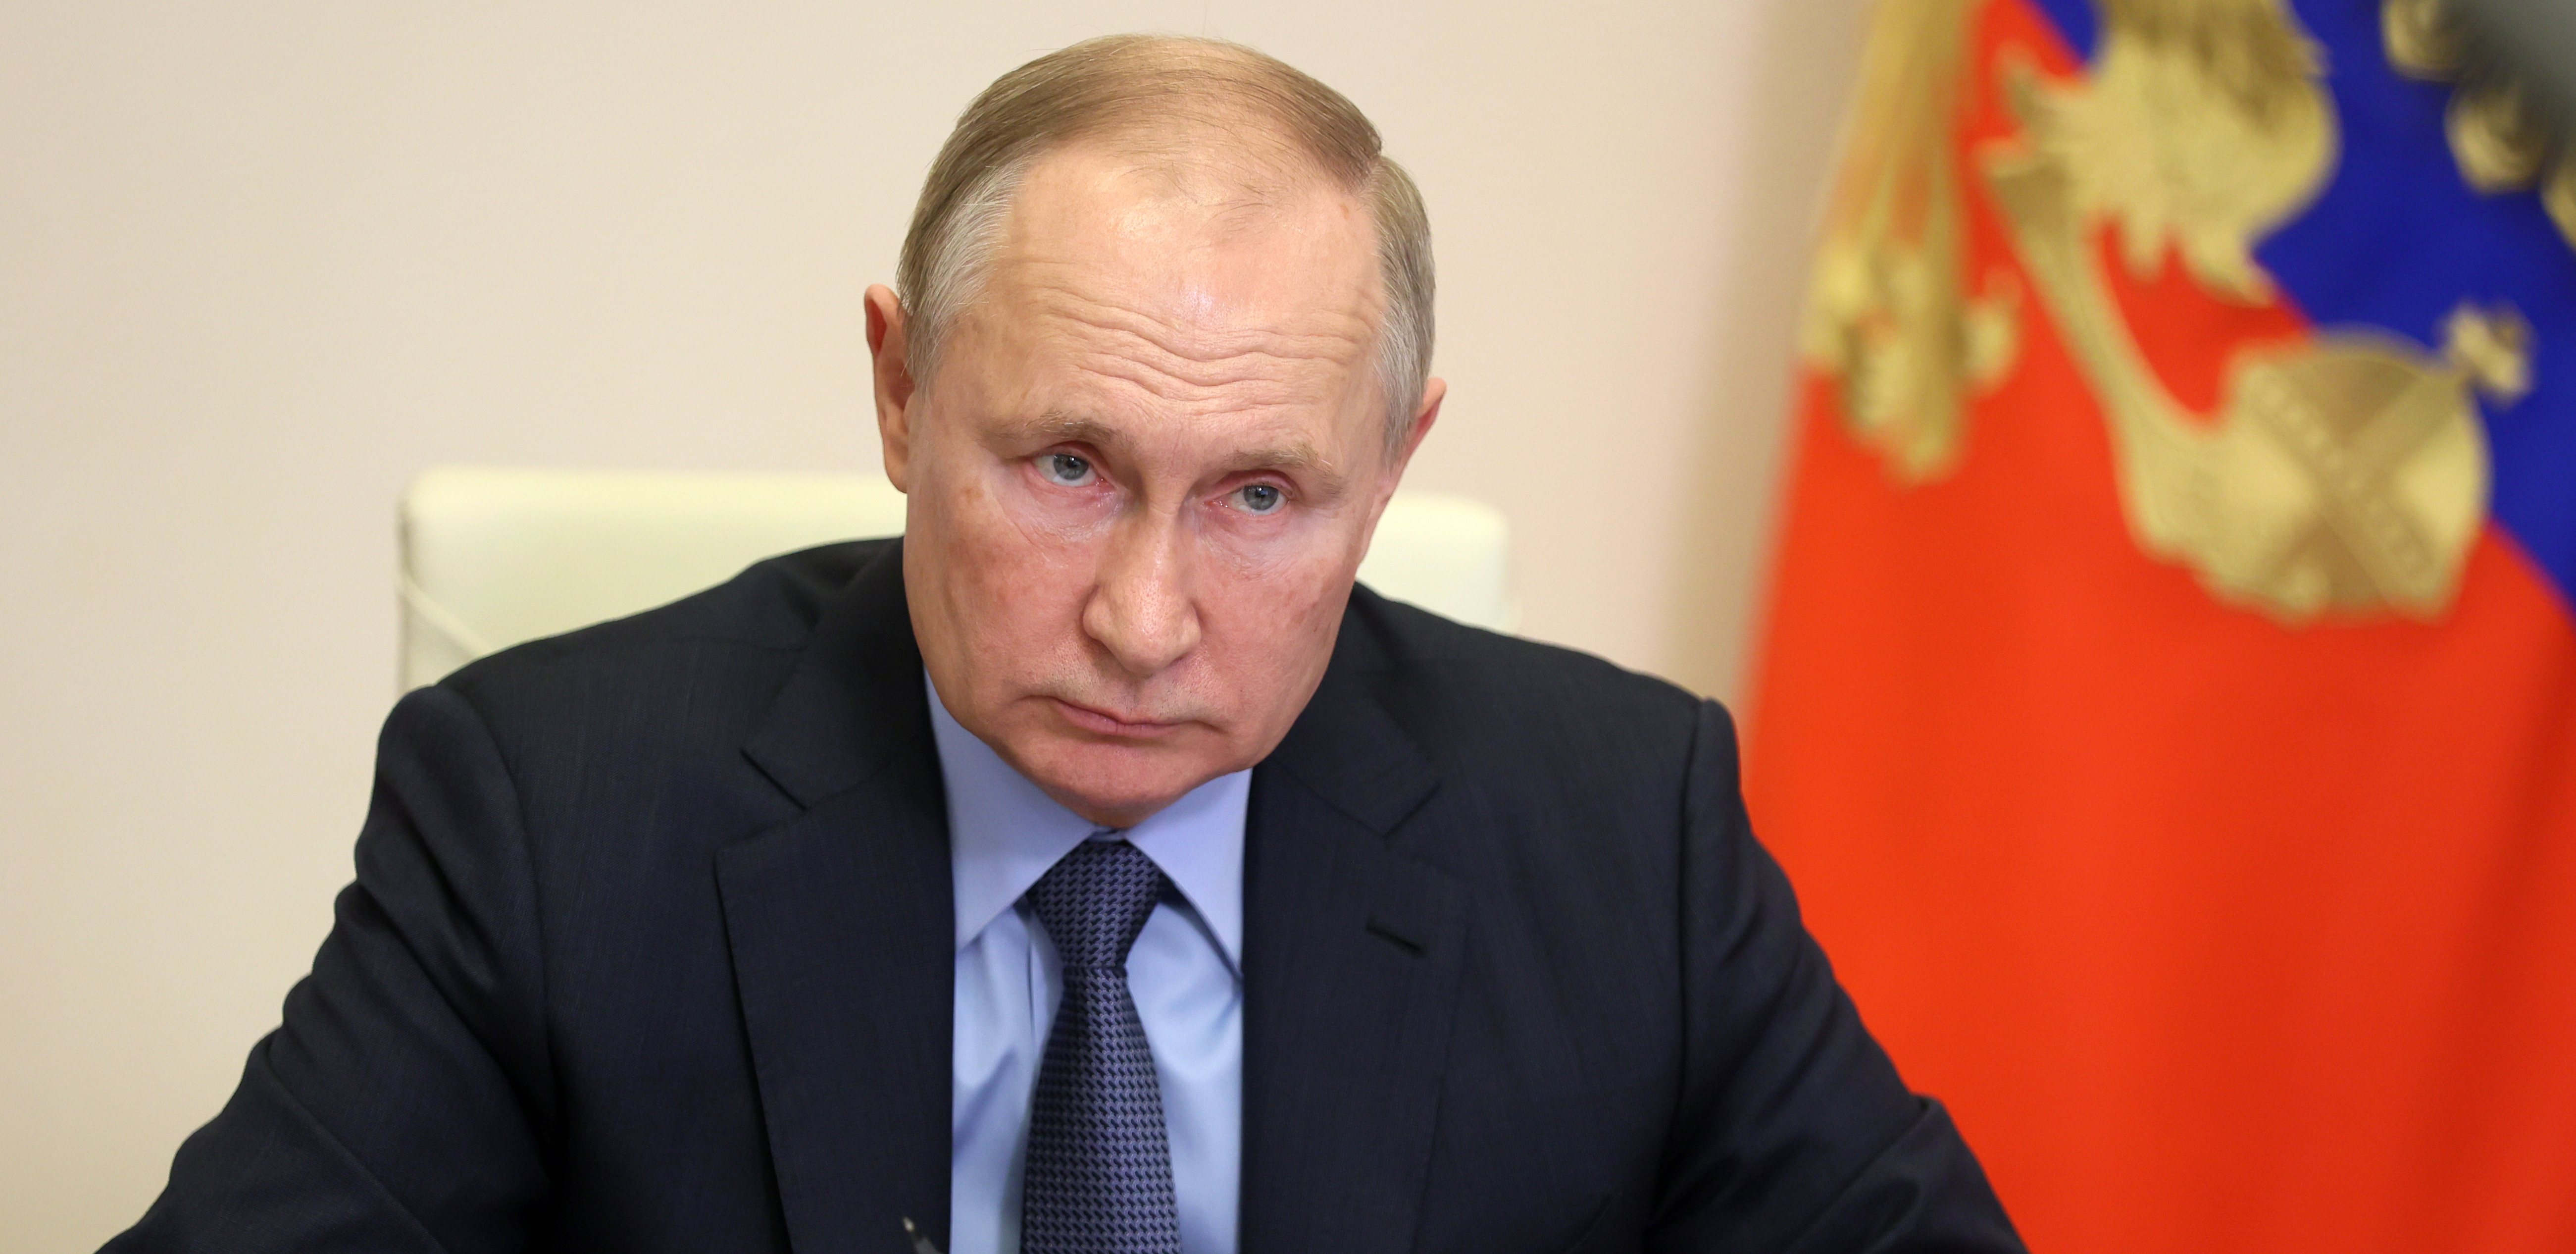 RAZREŠIO DILEME Putin javno govorio o odnosima Rusije i Italije